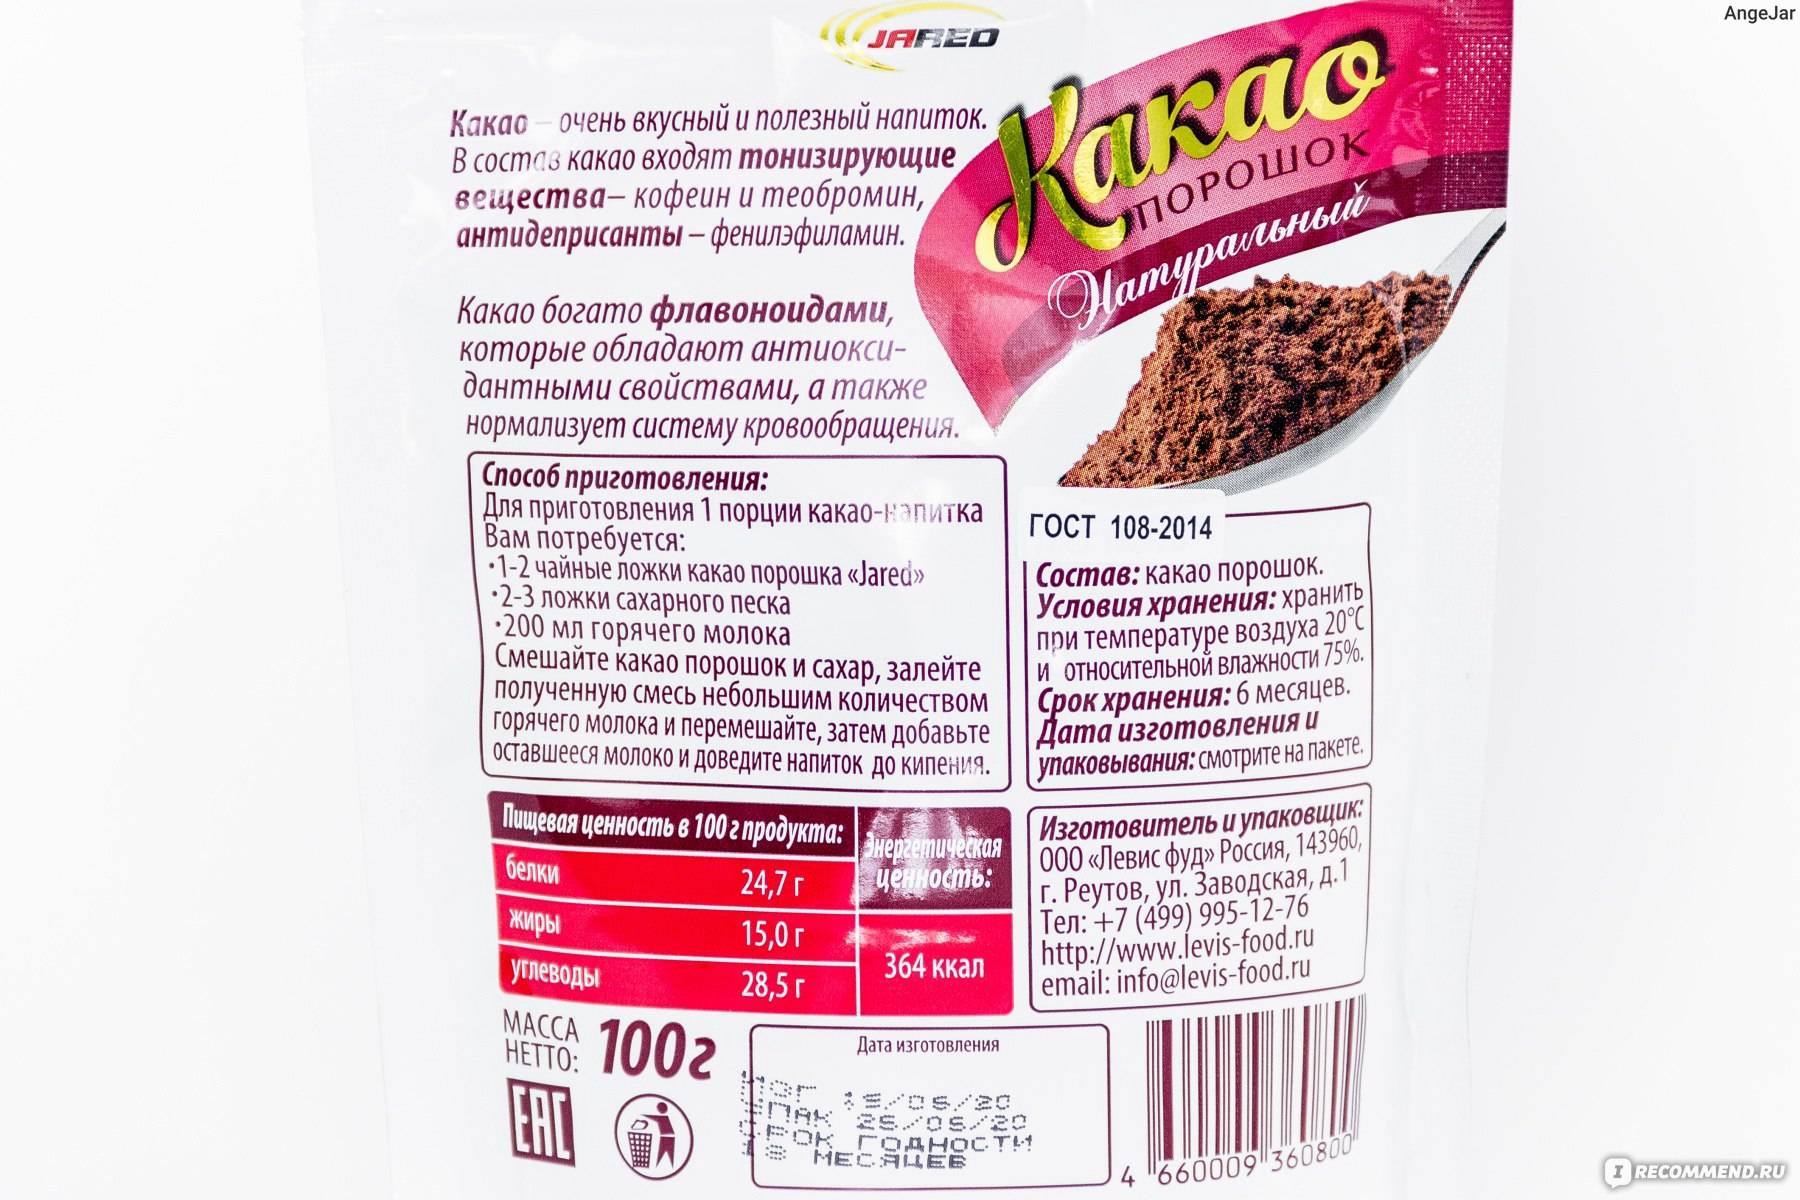 Гост 108-2014 какао-порошок. технические условия (с поправкой)